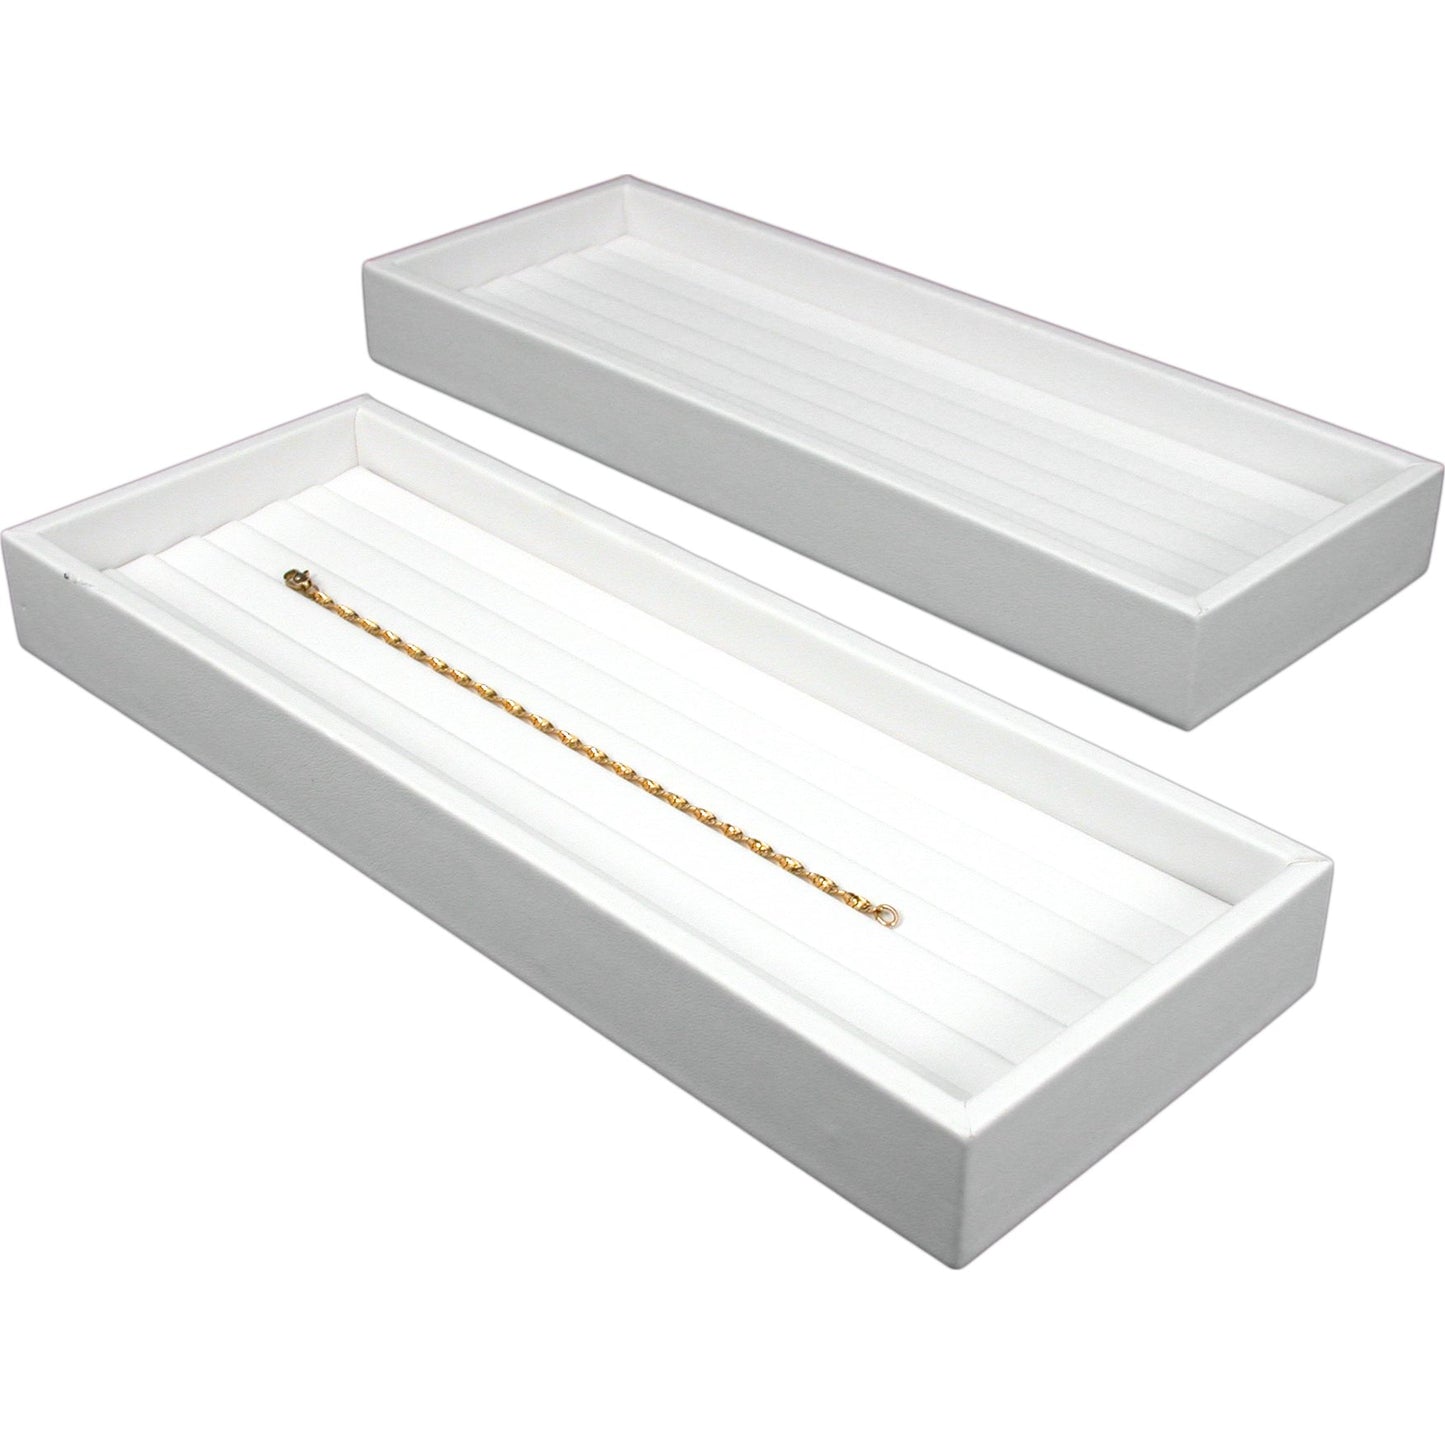 2 White Leather 6 Slot Bracelet Trays Jewelry Displays